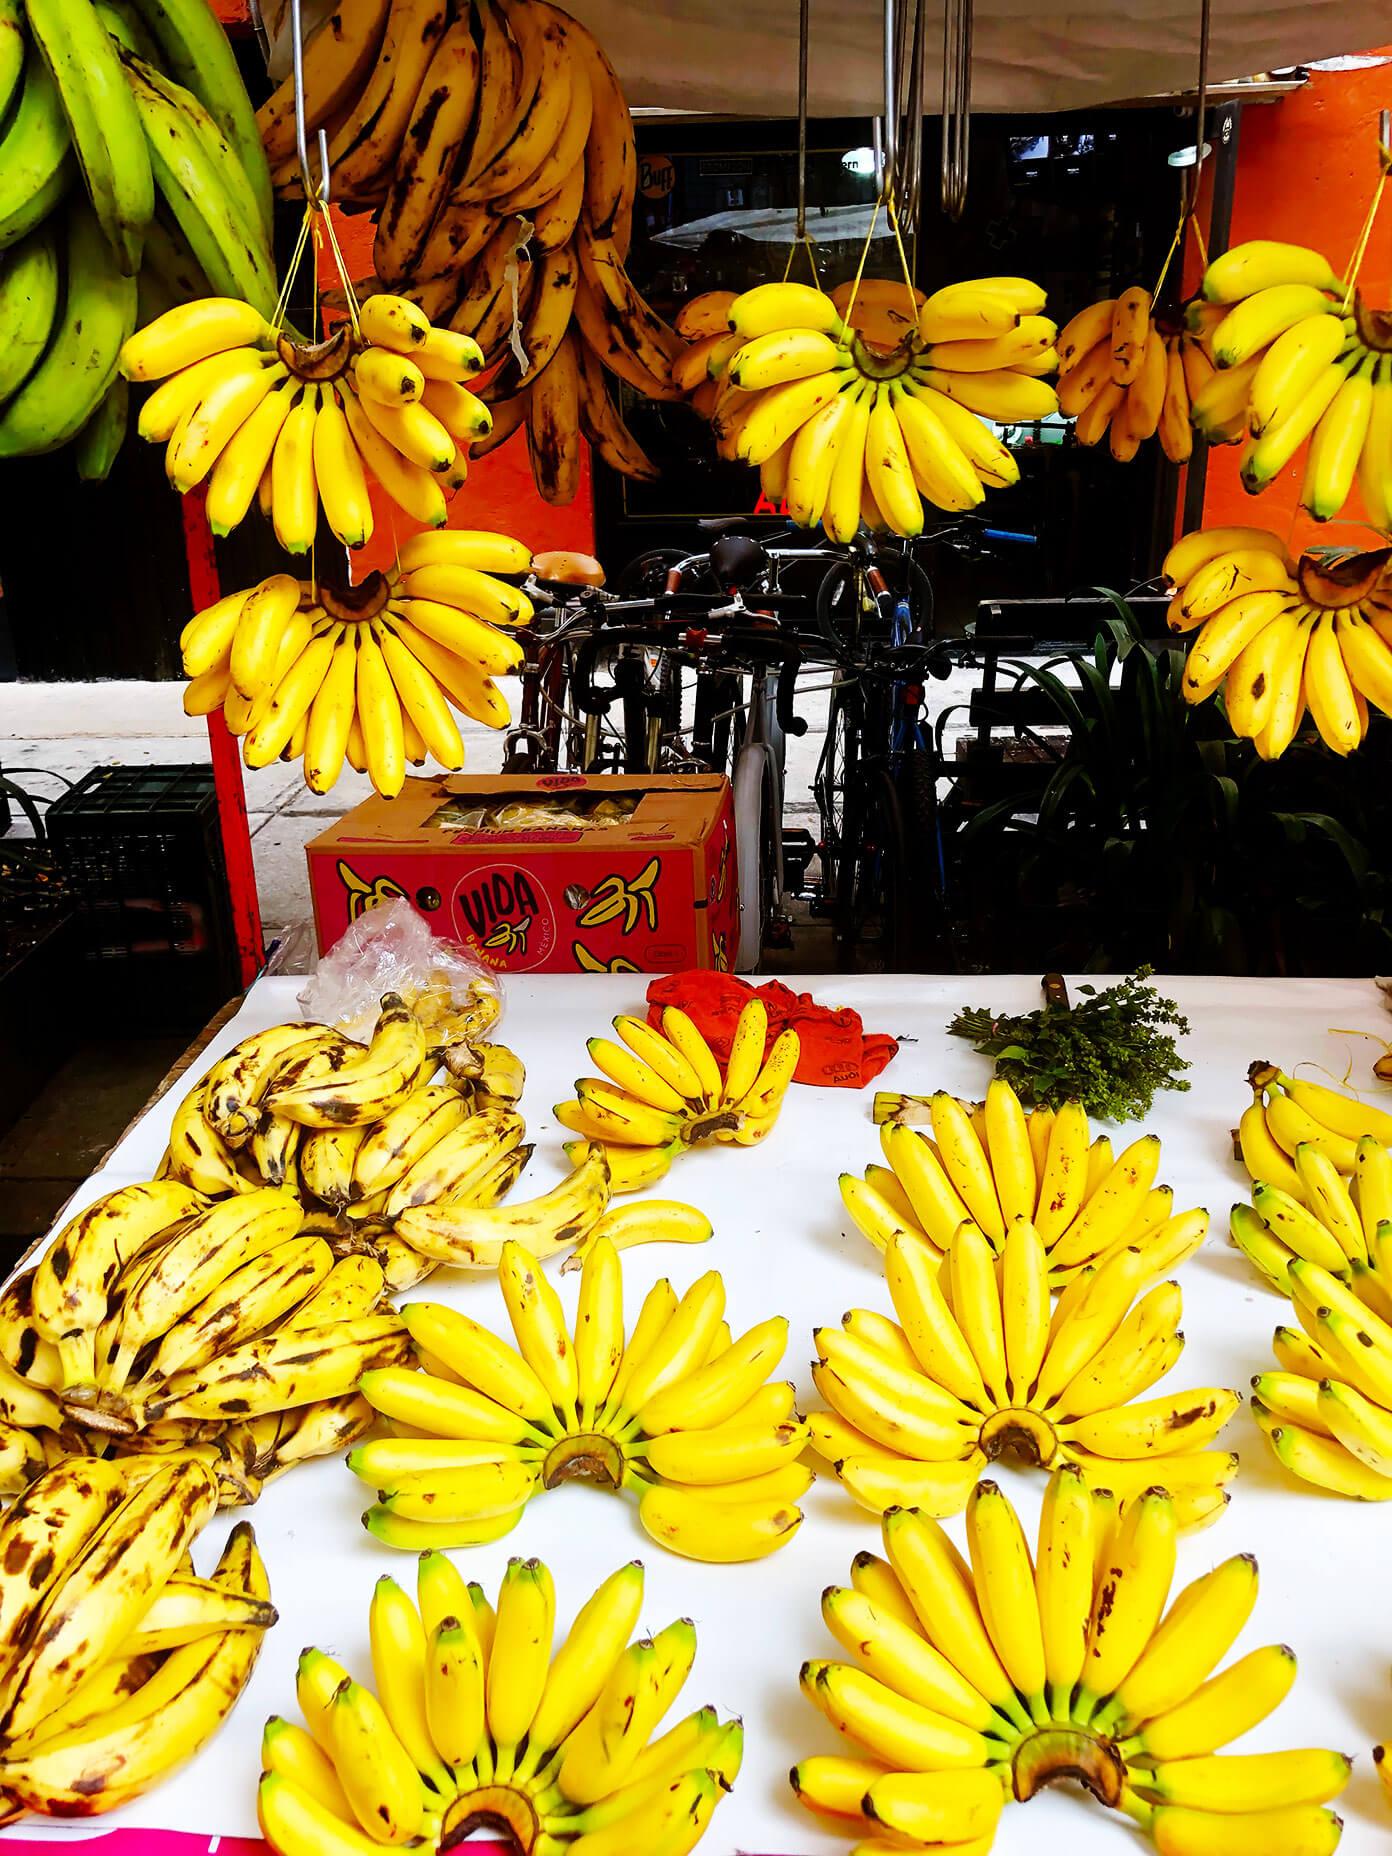 Mexico City Market Bananas